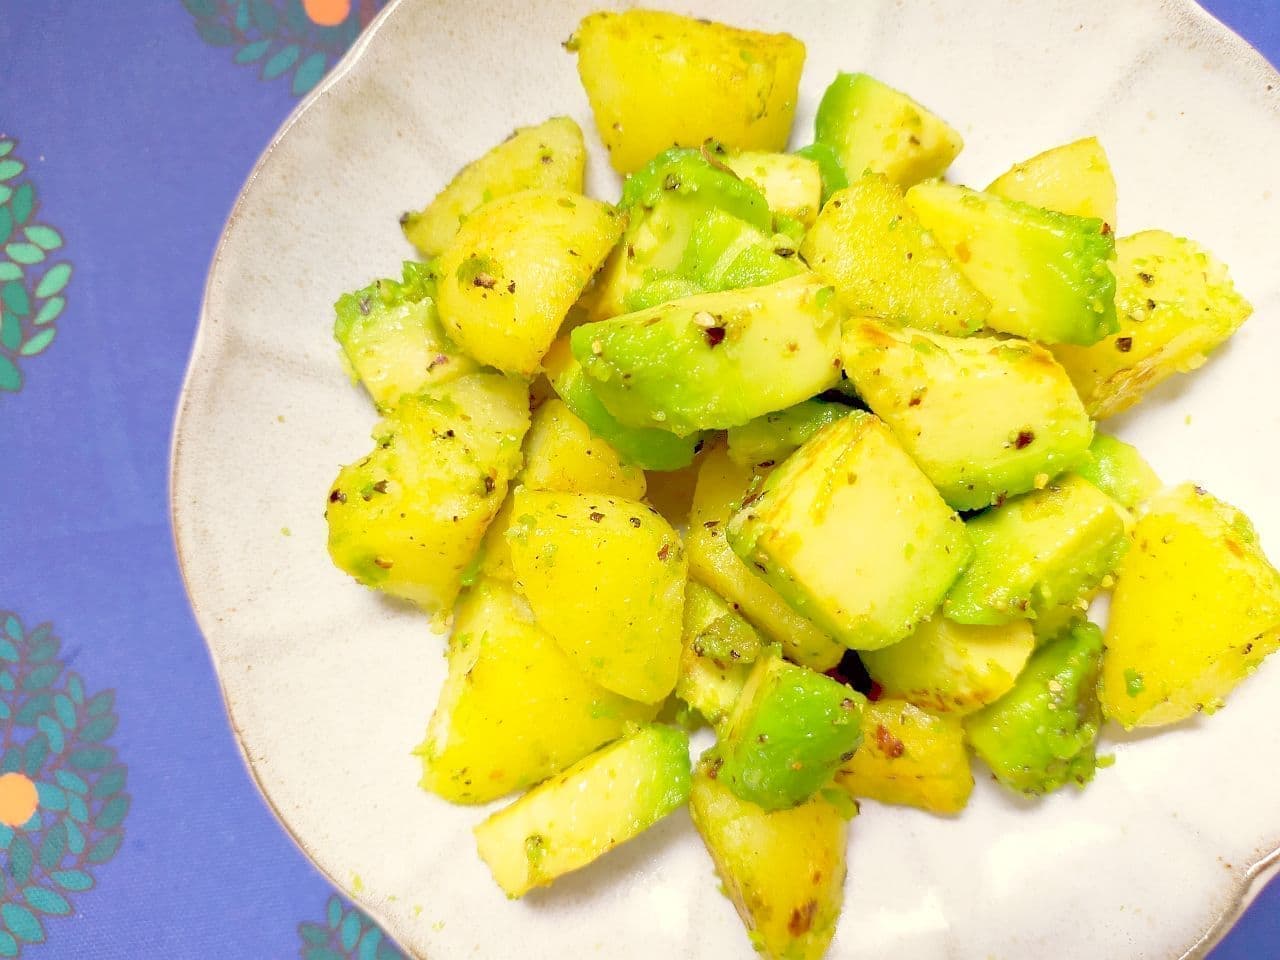 "Potato and avocado stir-fried with garlic" recipe